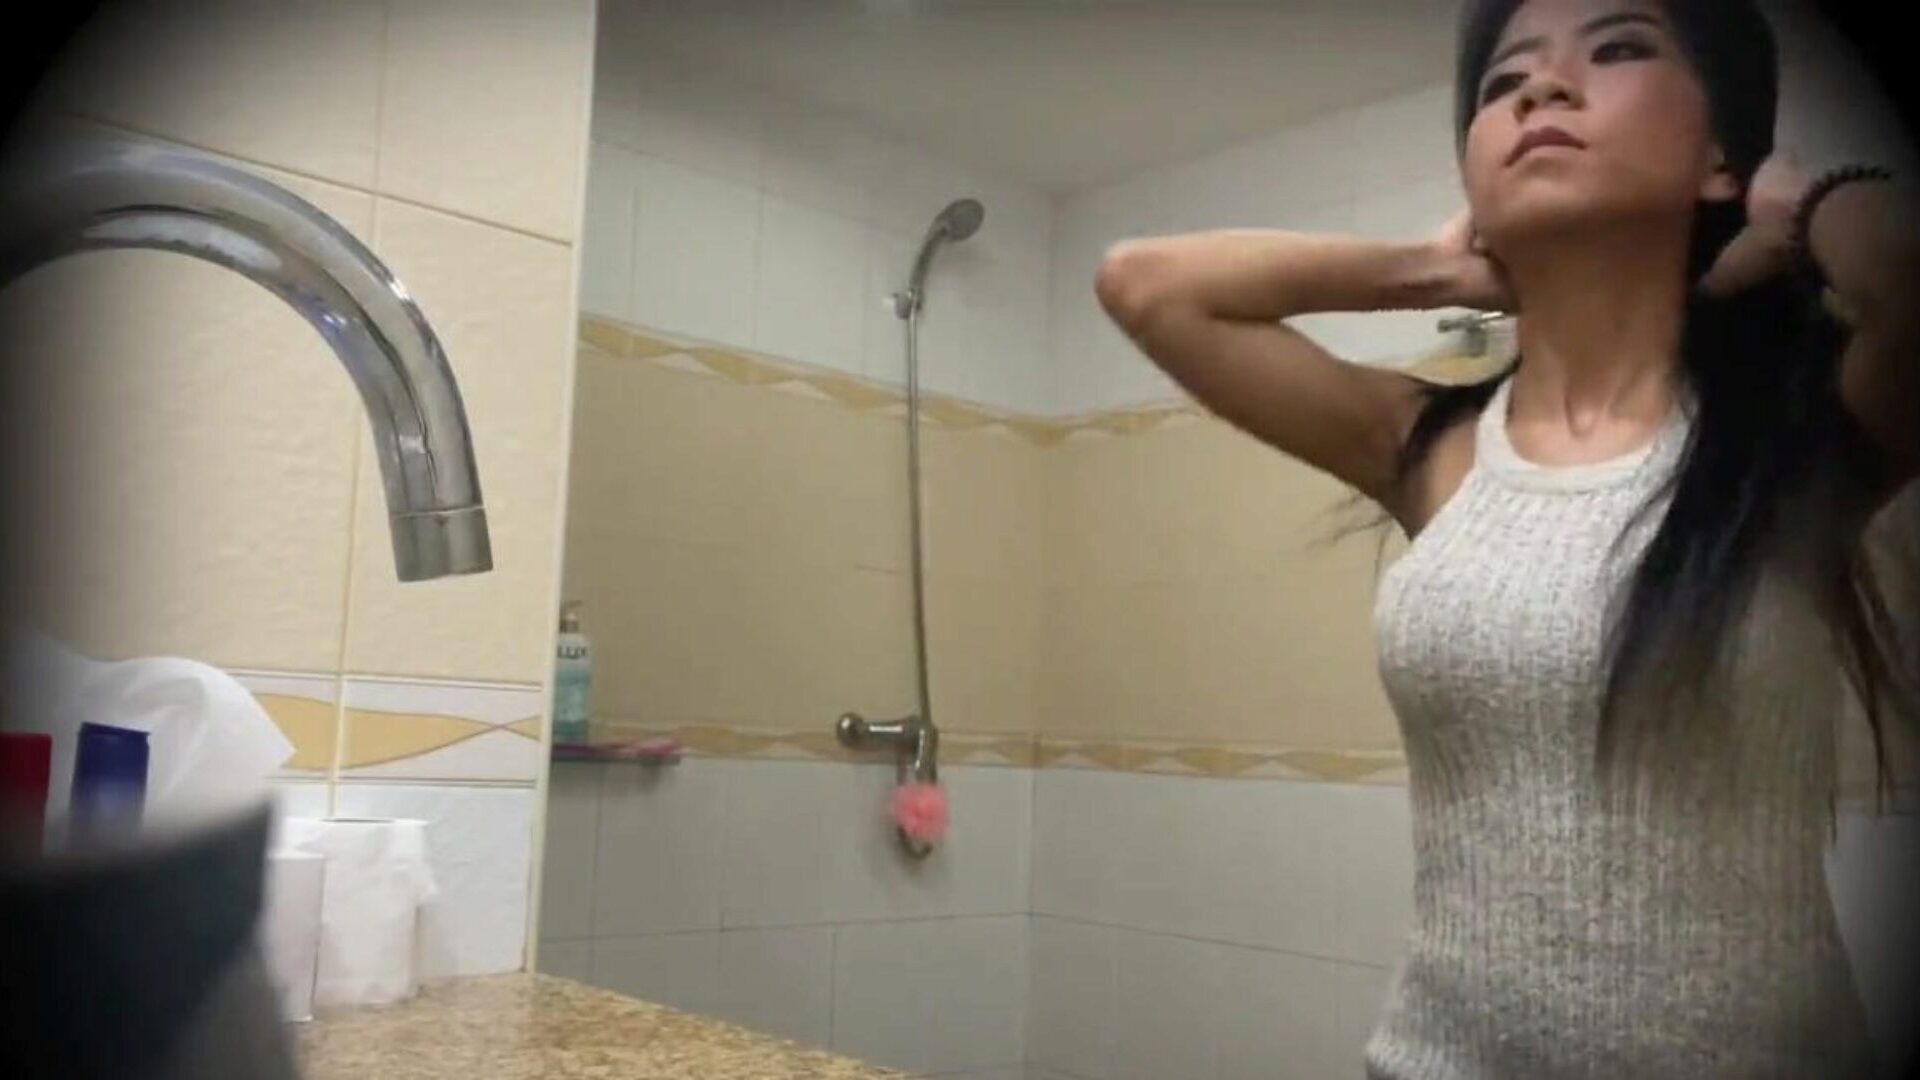 hermosa prostituta tailandesa follada en cámara oculta: bf porno mira hermosa prostituta tailandesa follada en cámara oculta video en xhamster - la mejor selección de videos de tubo porno gonzo de adolescentes asiáticos hd gratis para todos